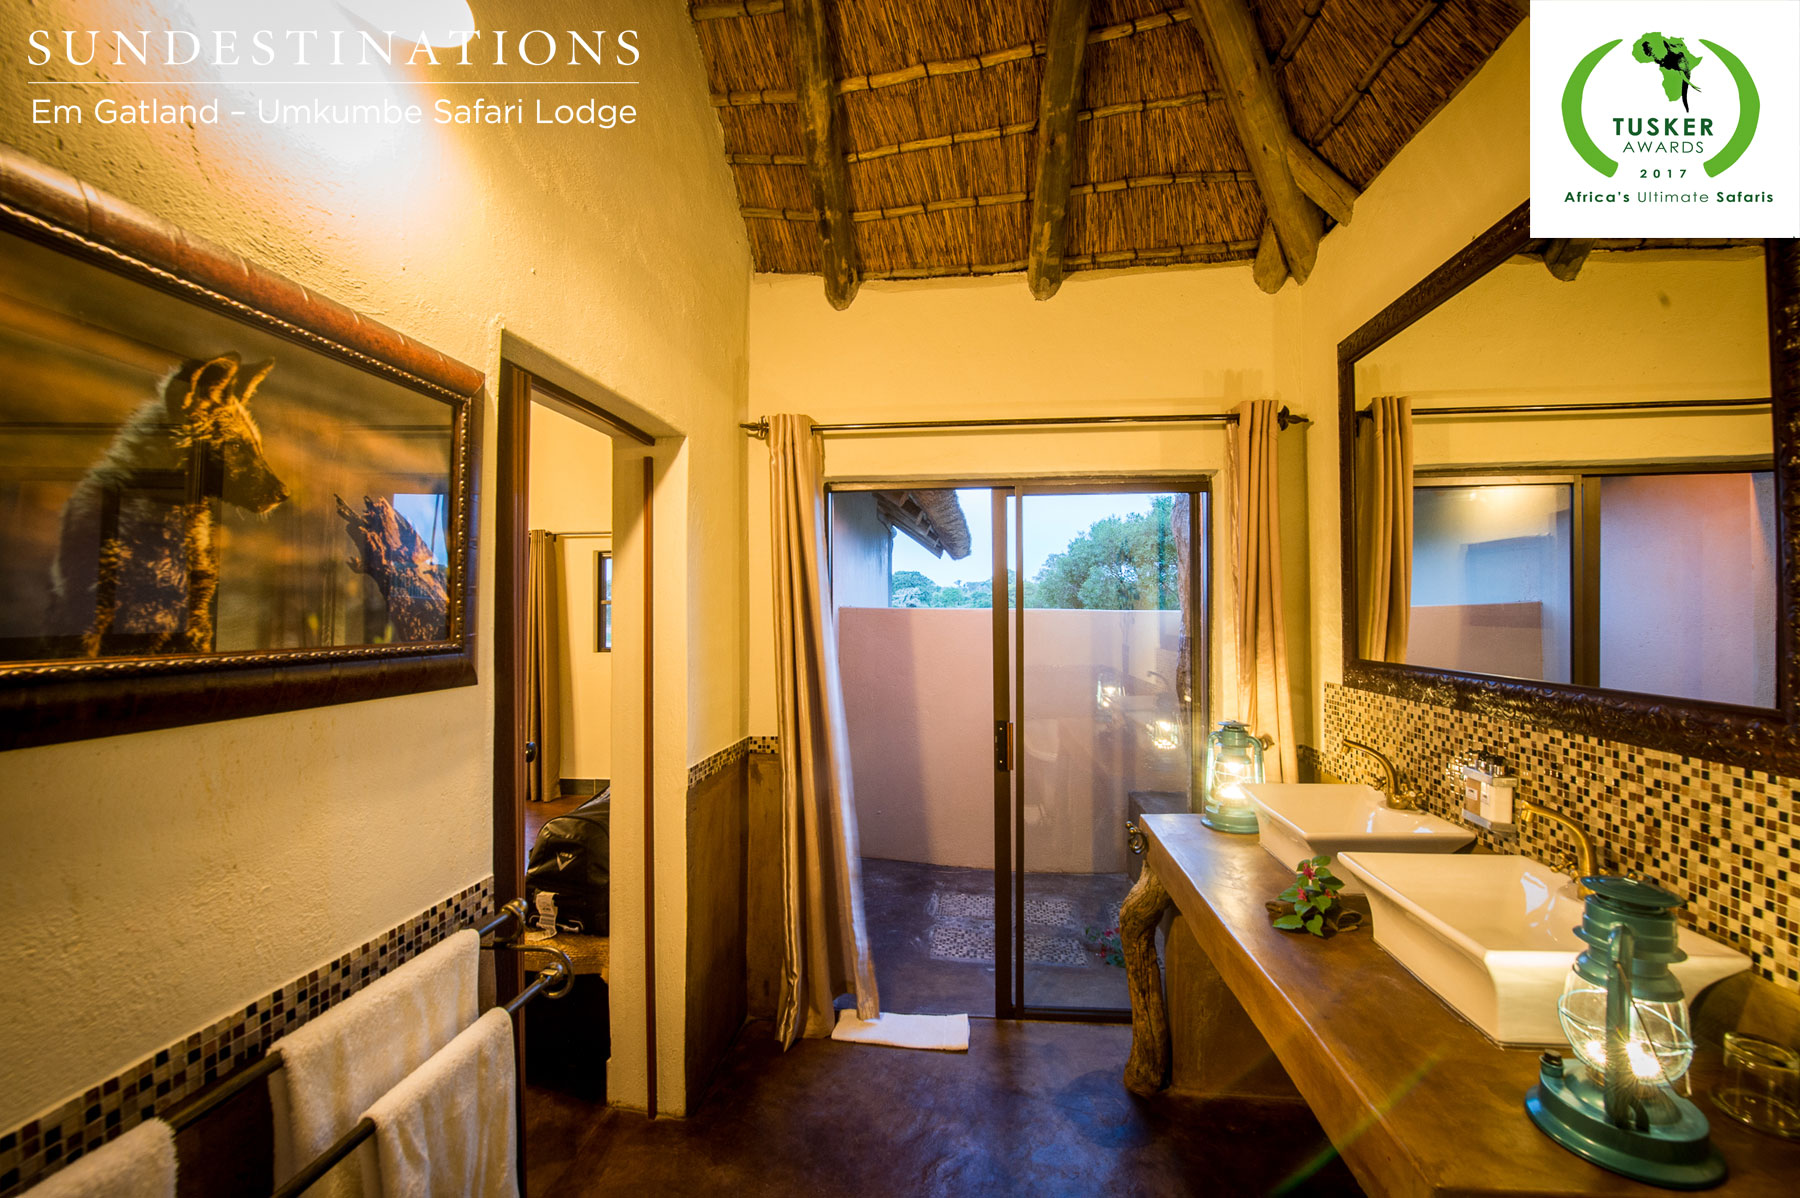 Umkumbe Safari Lodge Bathroom